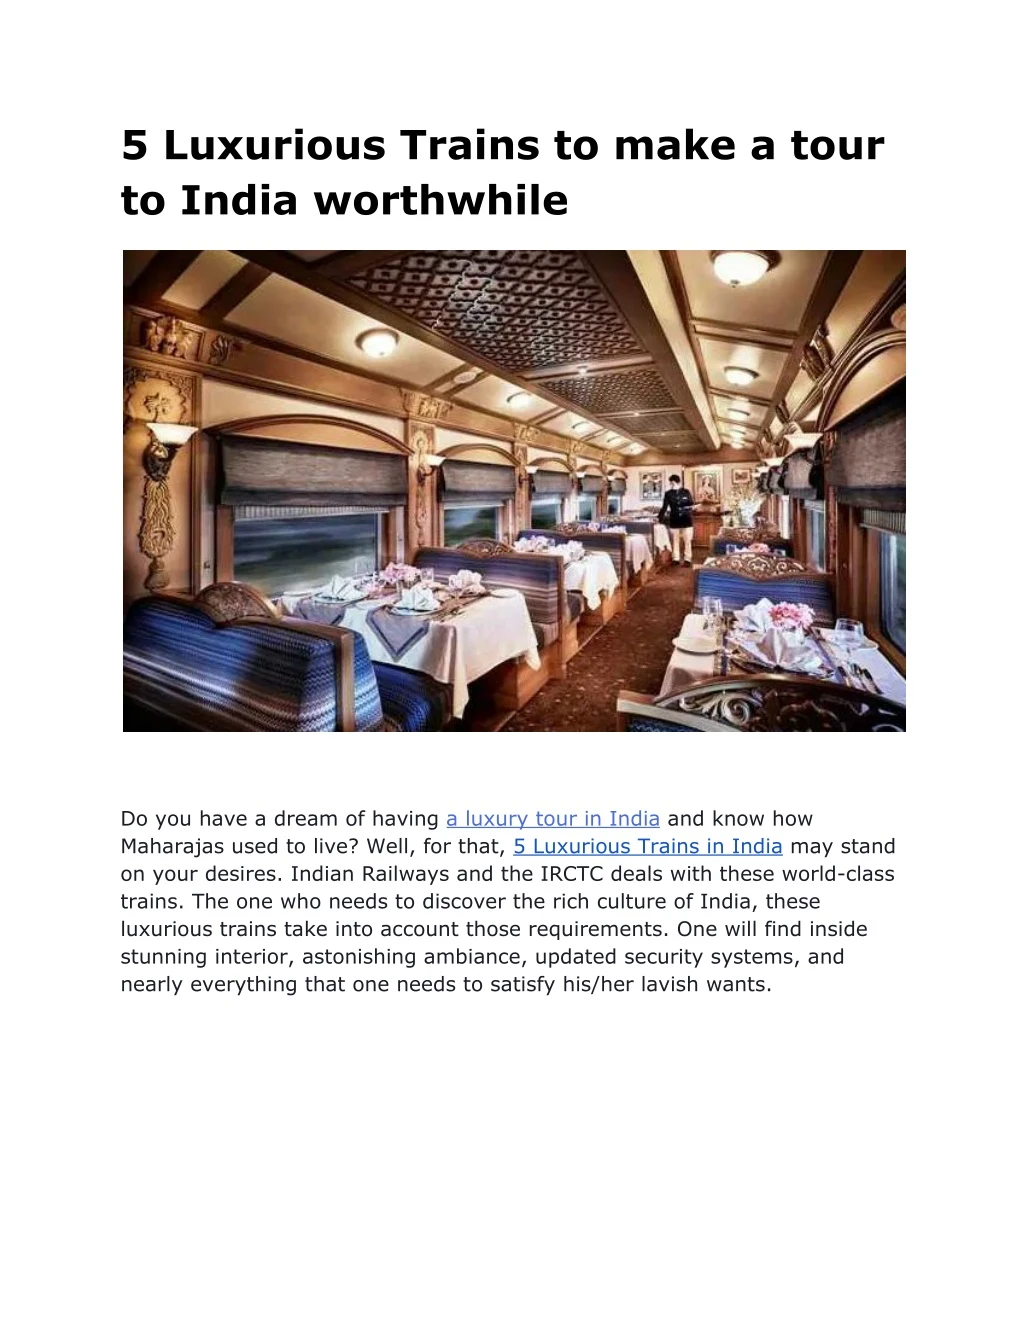 5 luxurious trains to make a tour to india